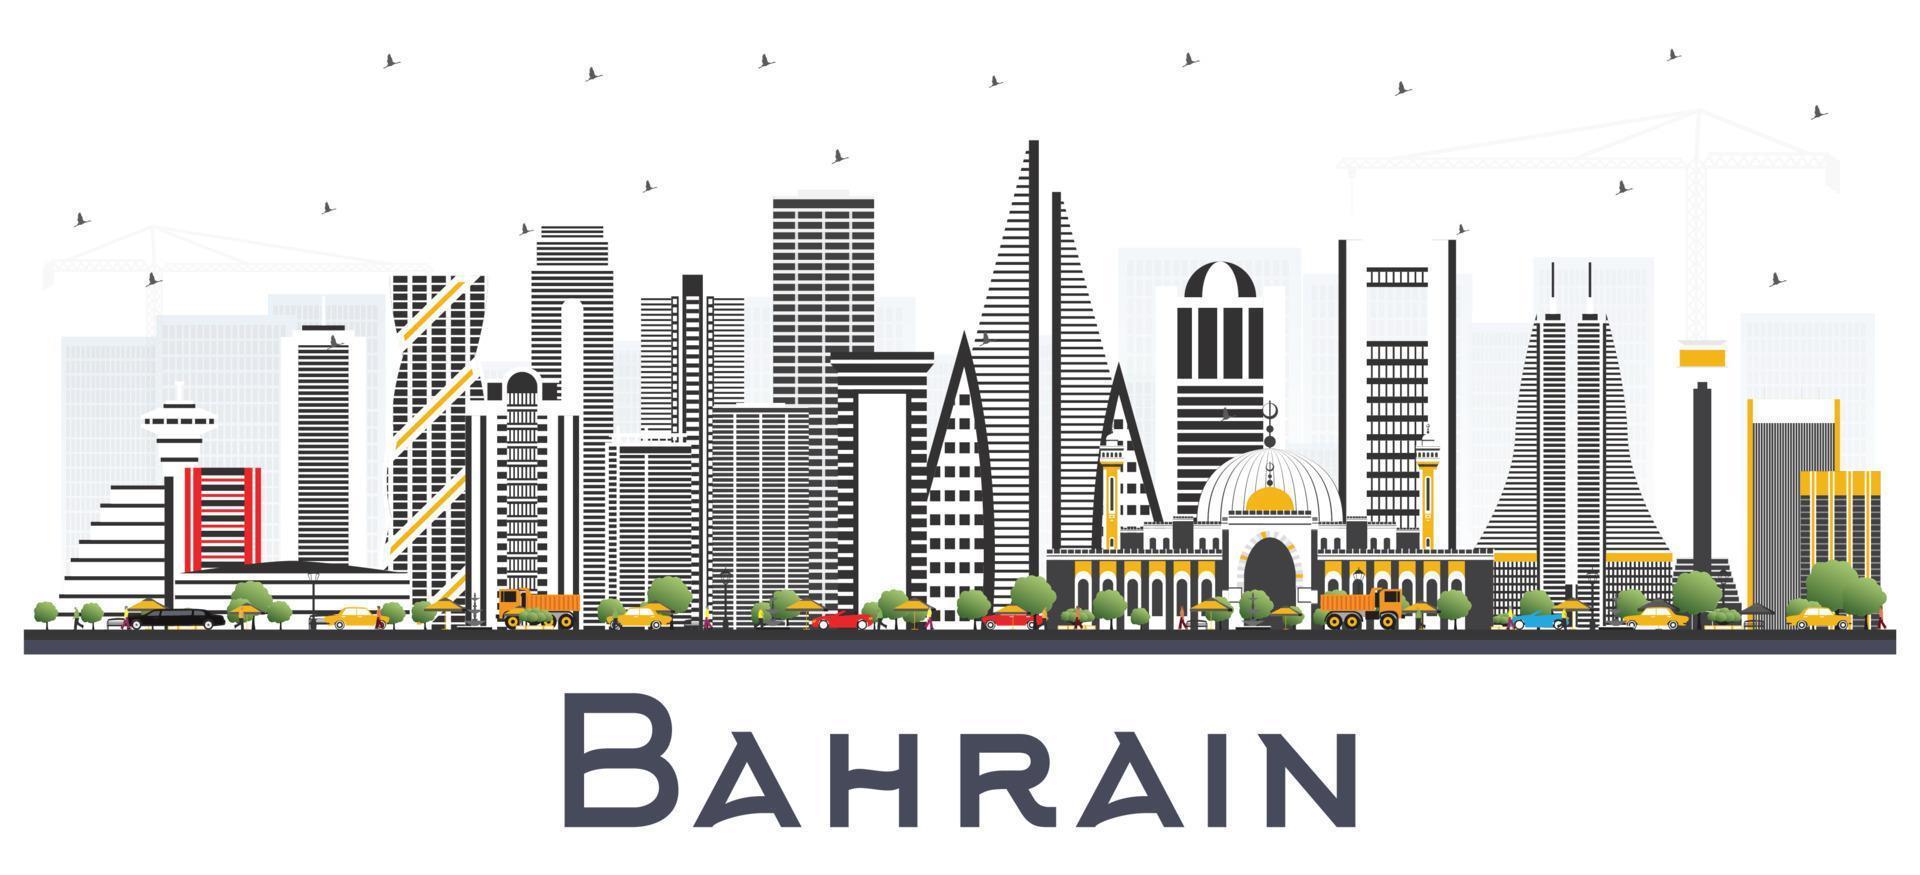 Bahrain City Skyline with Gray Buildings. vector